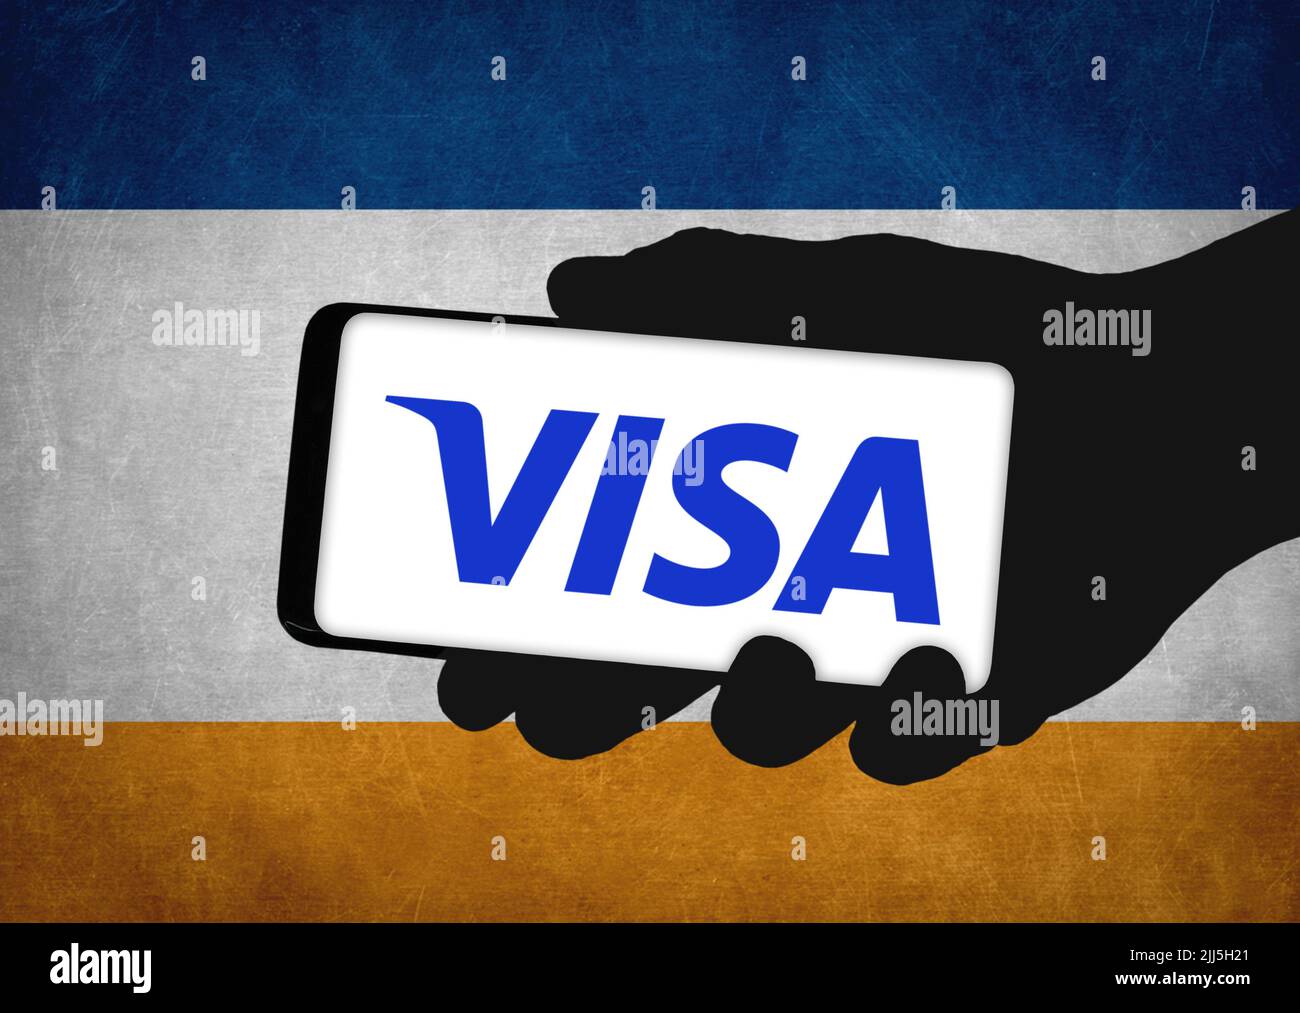 Symbole de visa visa Banque de photographies et d'images à haute résolution  - Alamy